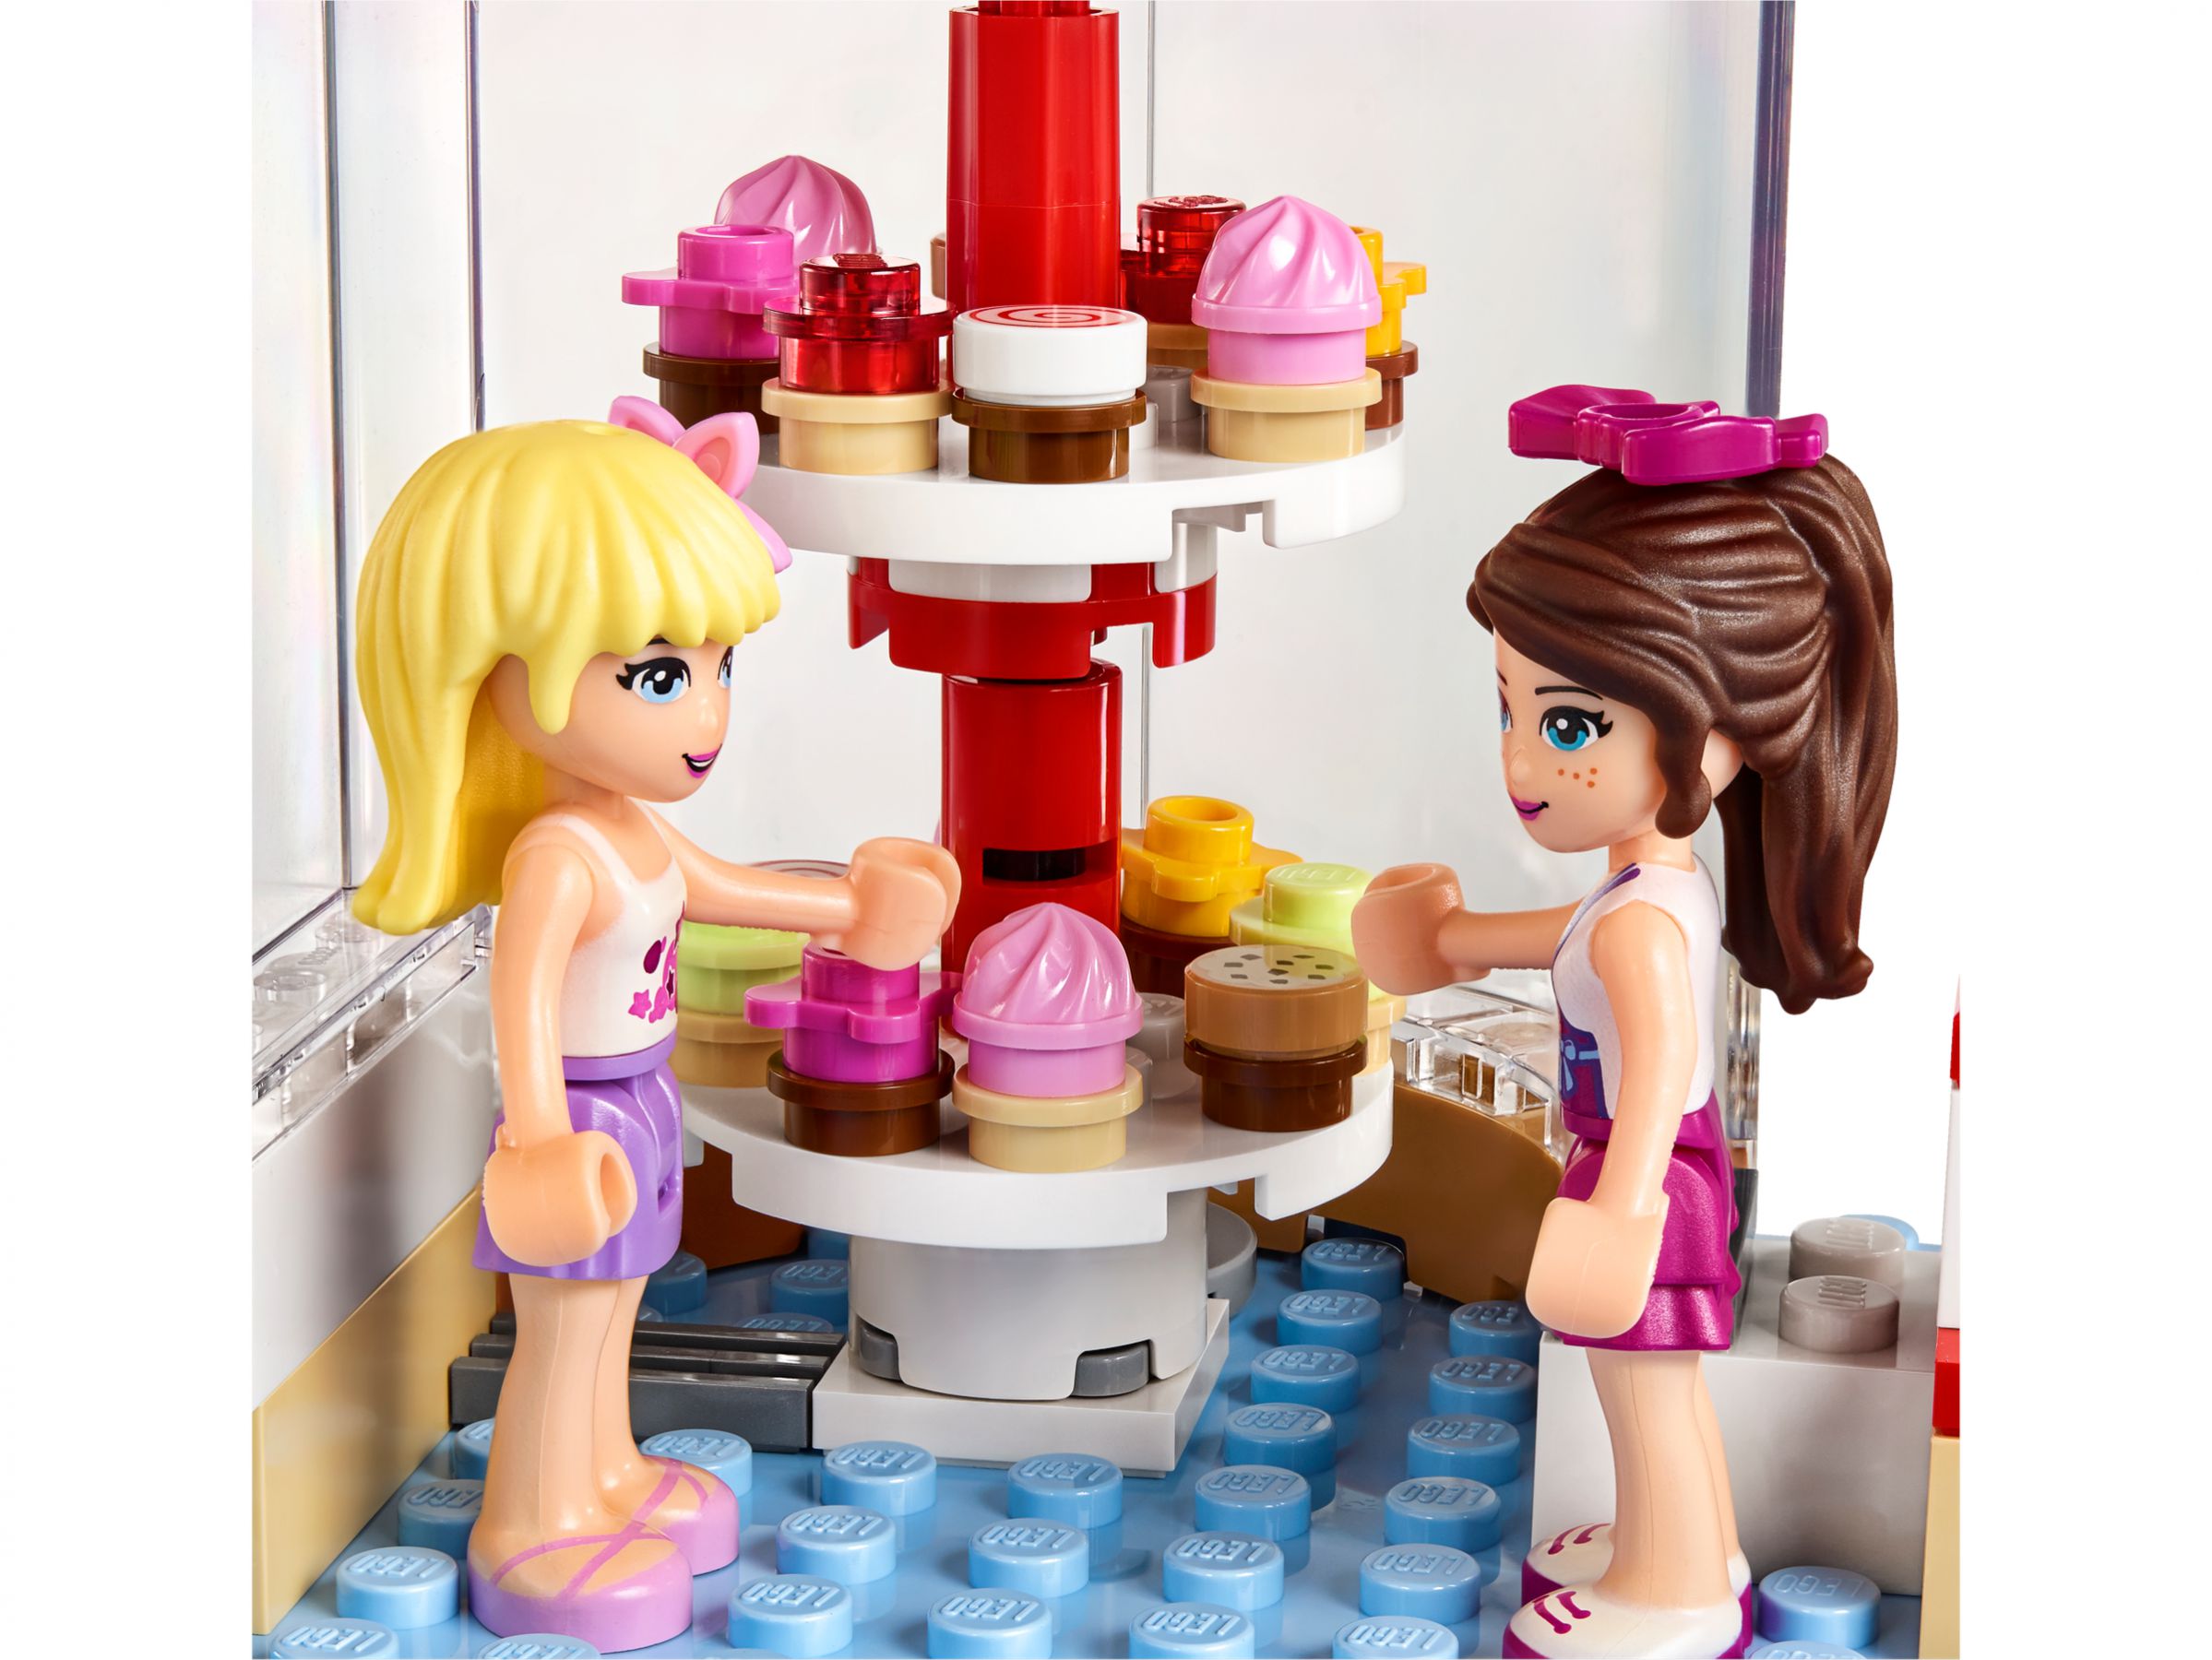 LEGO Friends 41119 Heartlake Cupcake-Café LEGO_41119_alt6.jpg